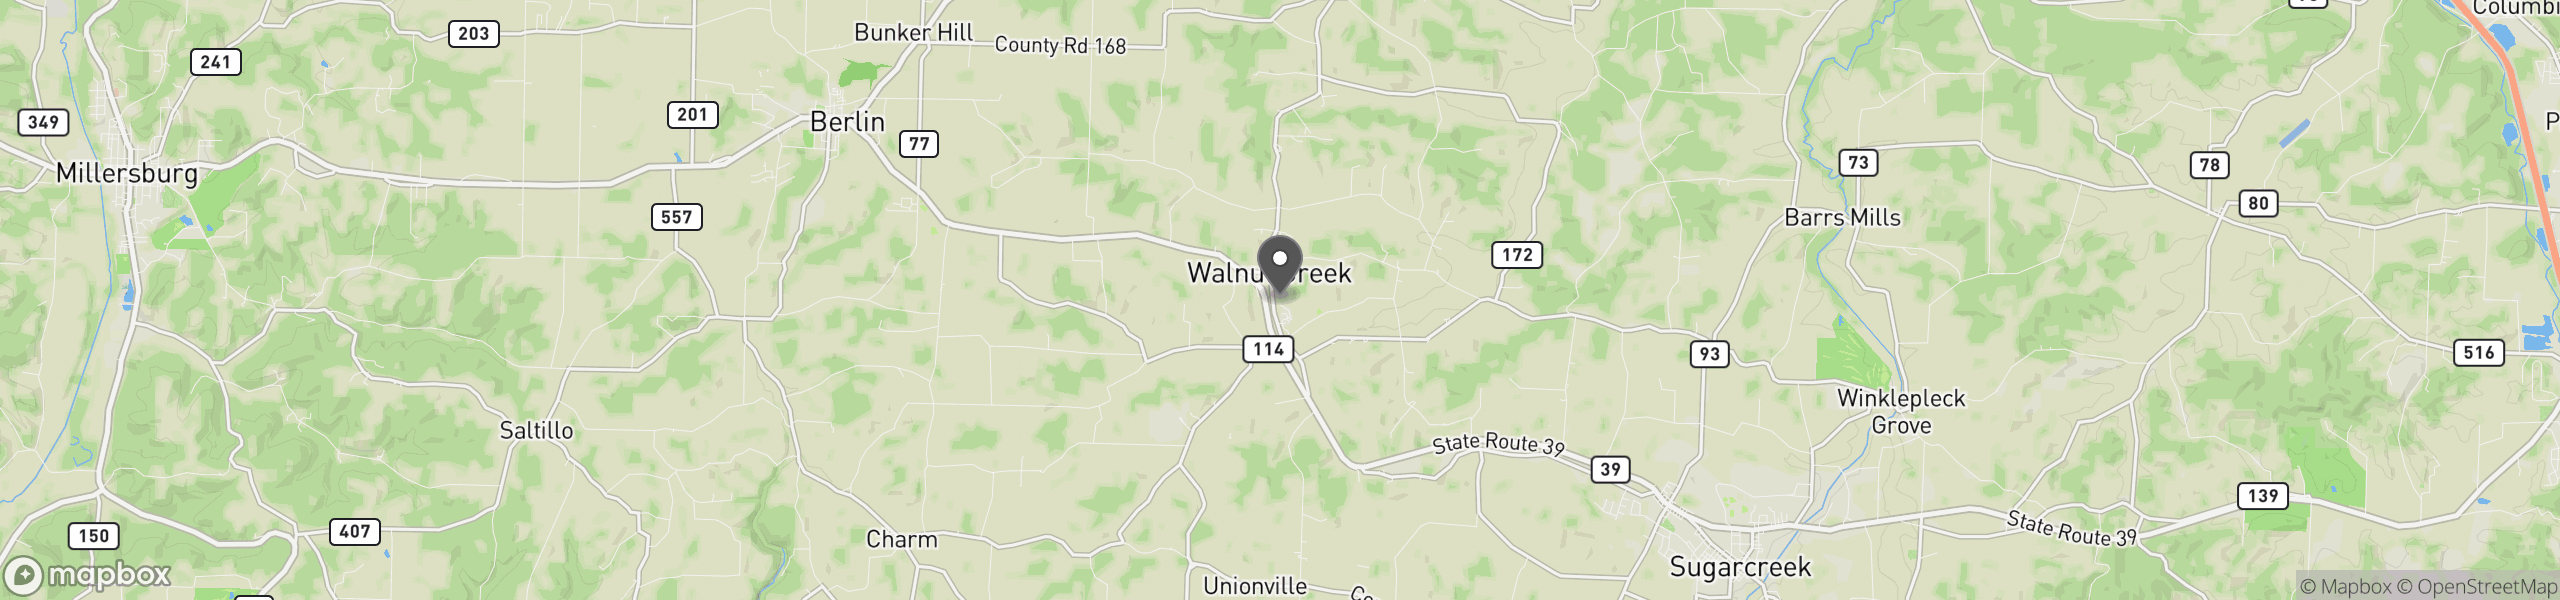 Walnut Creek, OH 44687